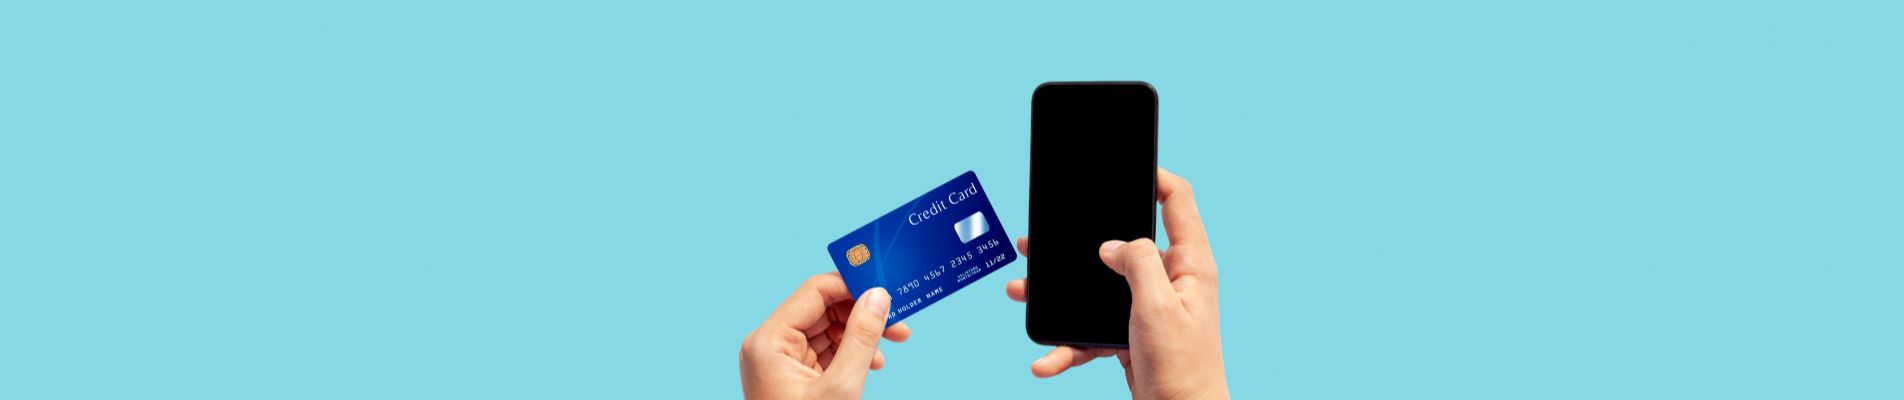 Dicas para usar o cartão de crédito com responsabilidade | Foto de uma pessoa segurando um celular e um cartão de crédito | Economia e renda extra | Eu Dou Conta